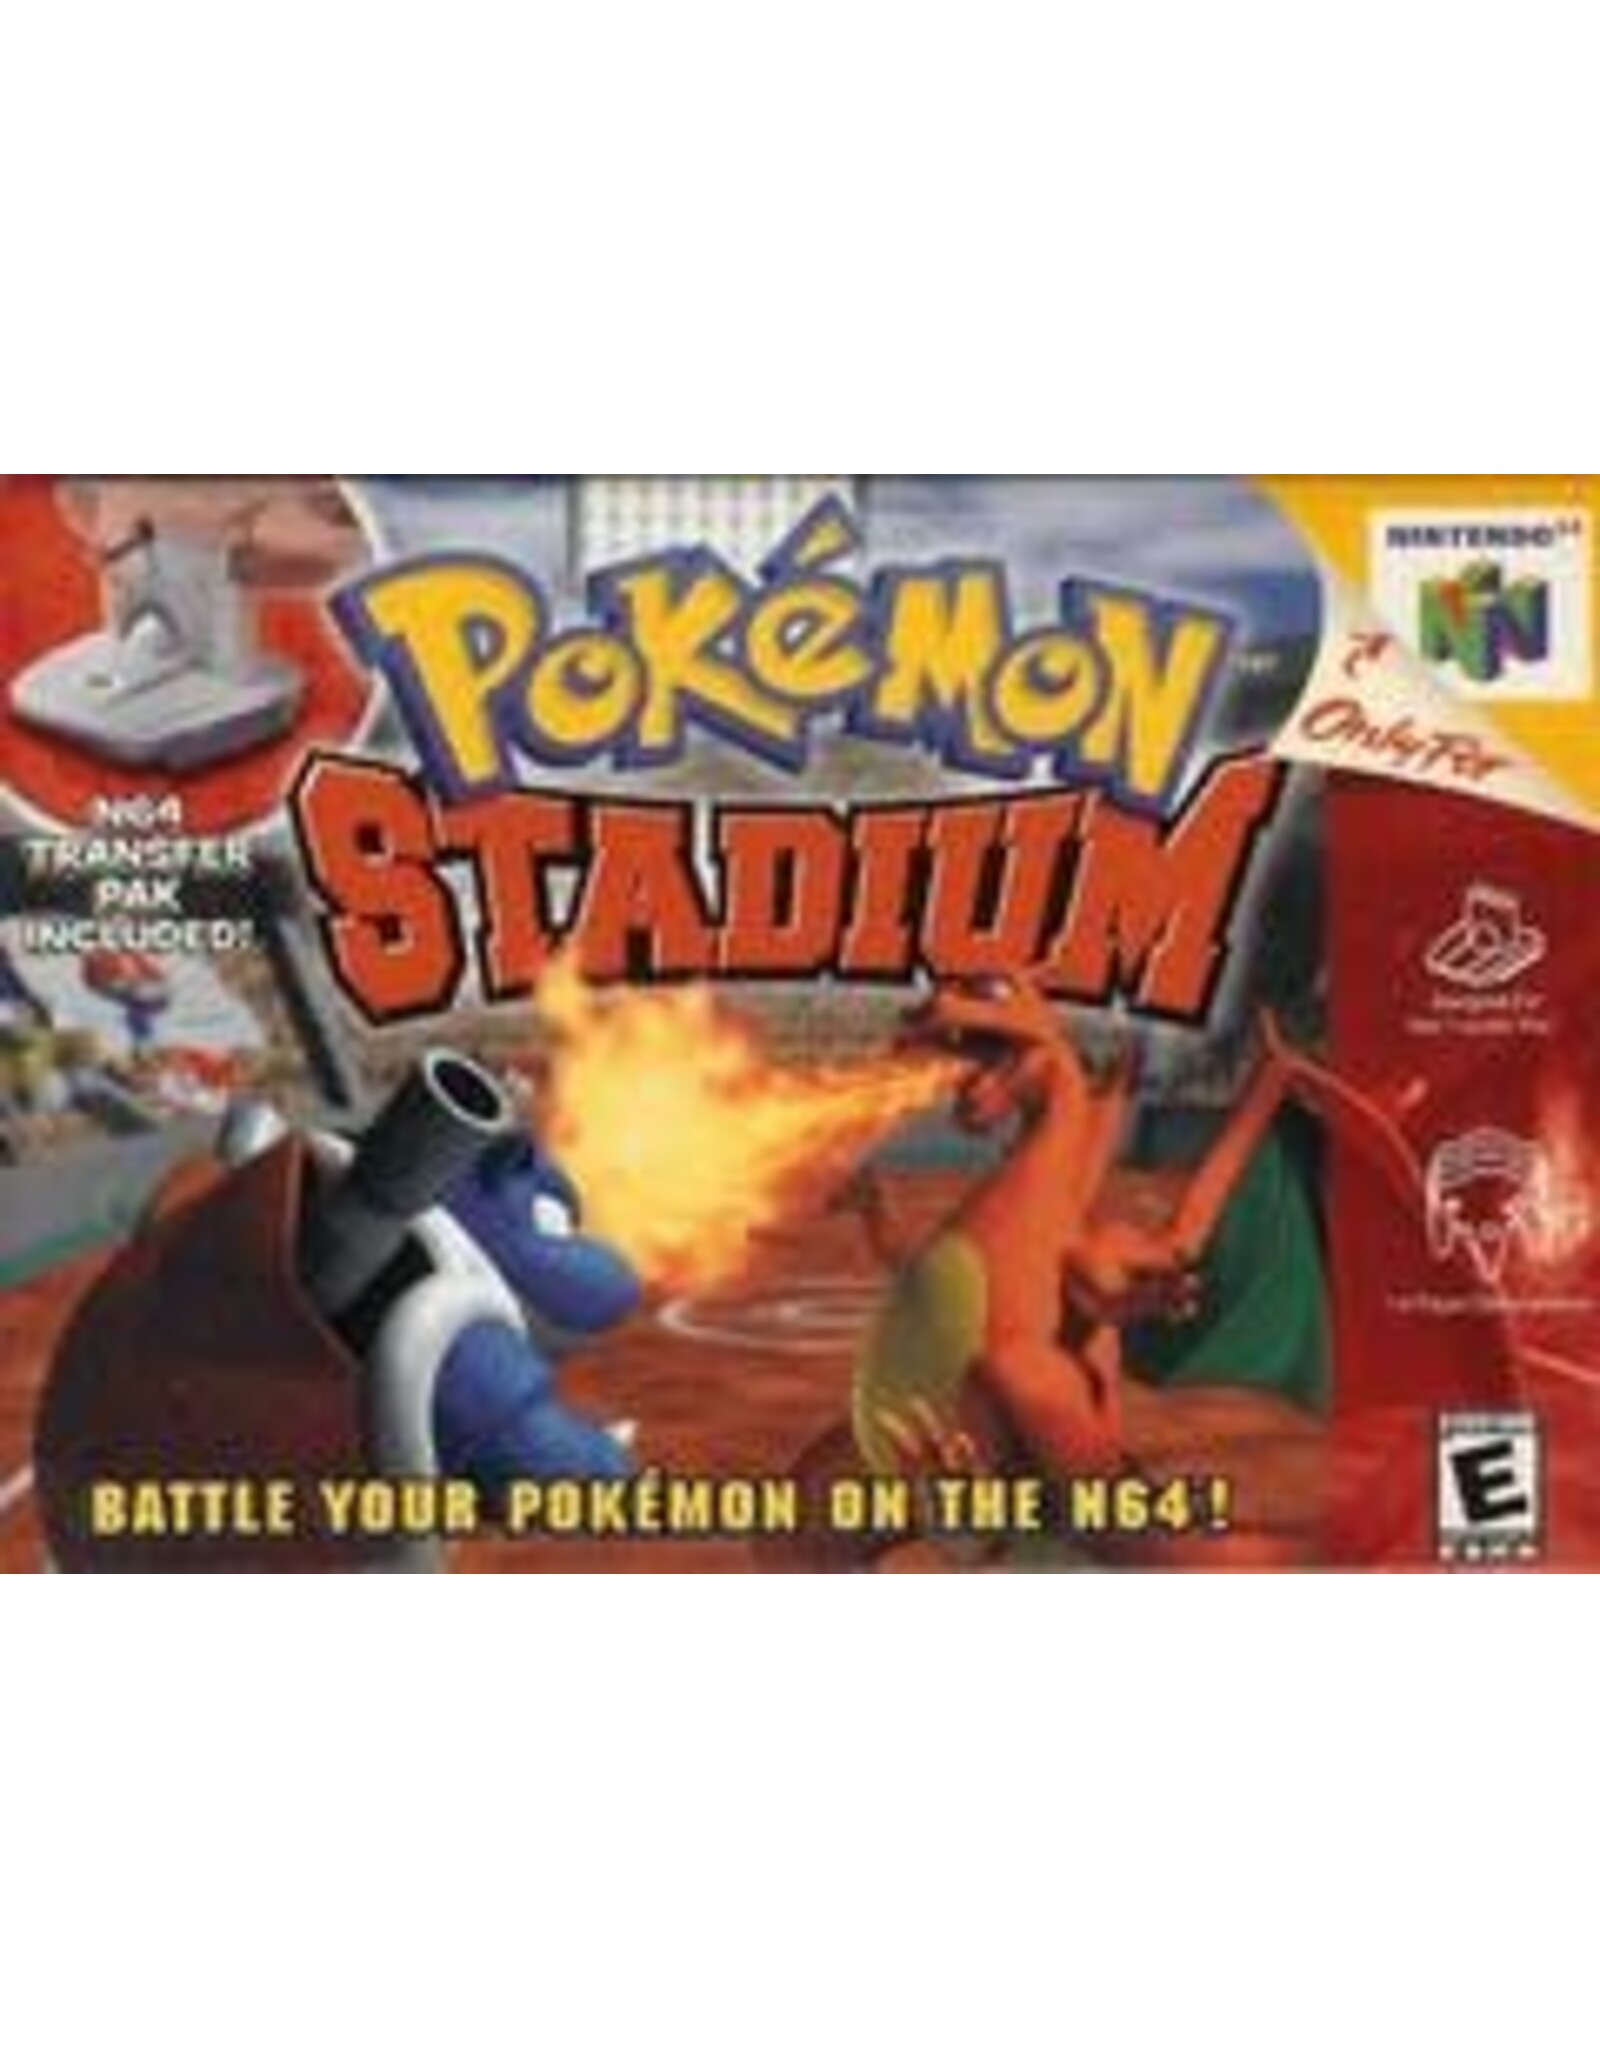 Nintendo 64 Pokemon Stadium (CiB, Minor Damaged Box)